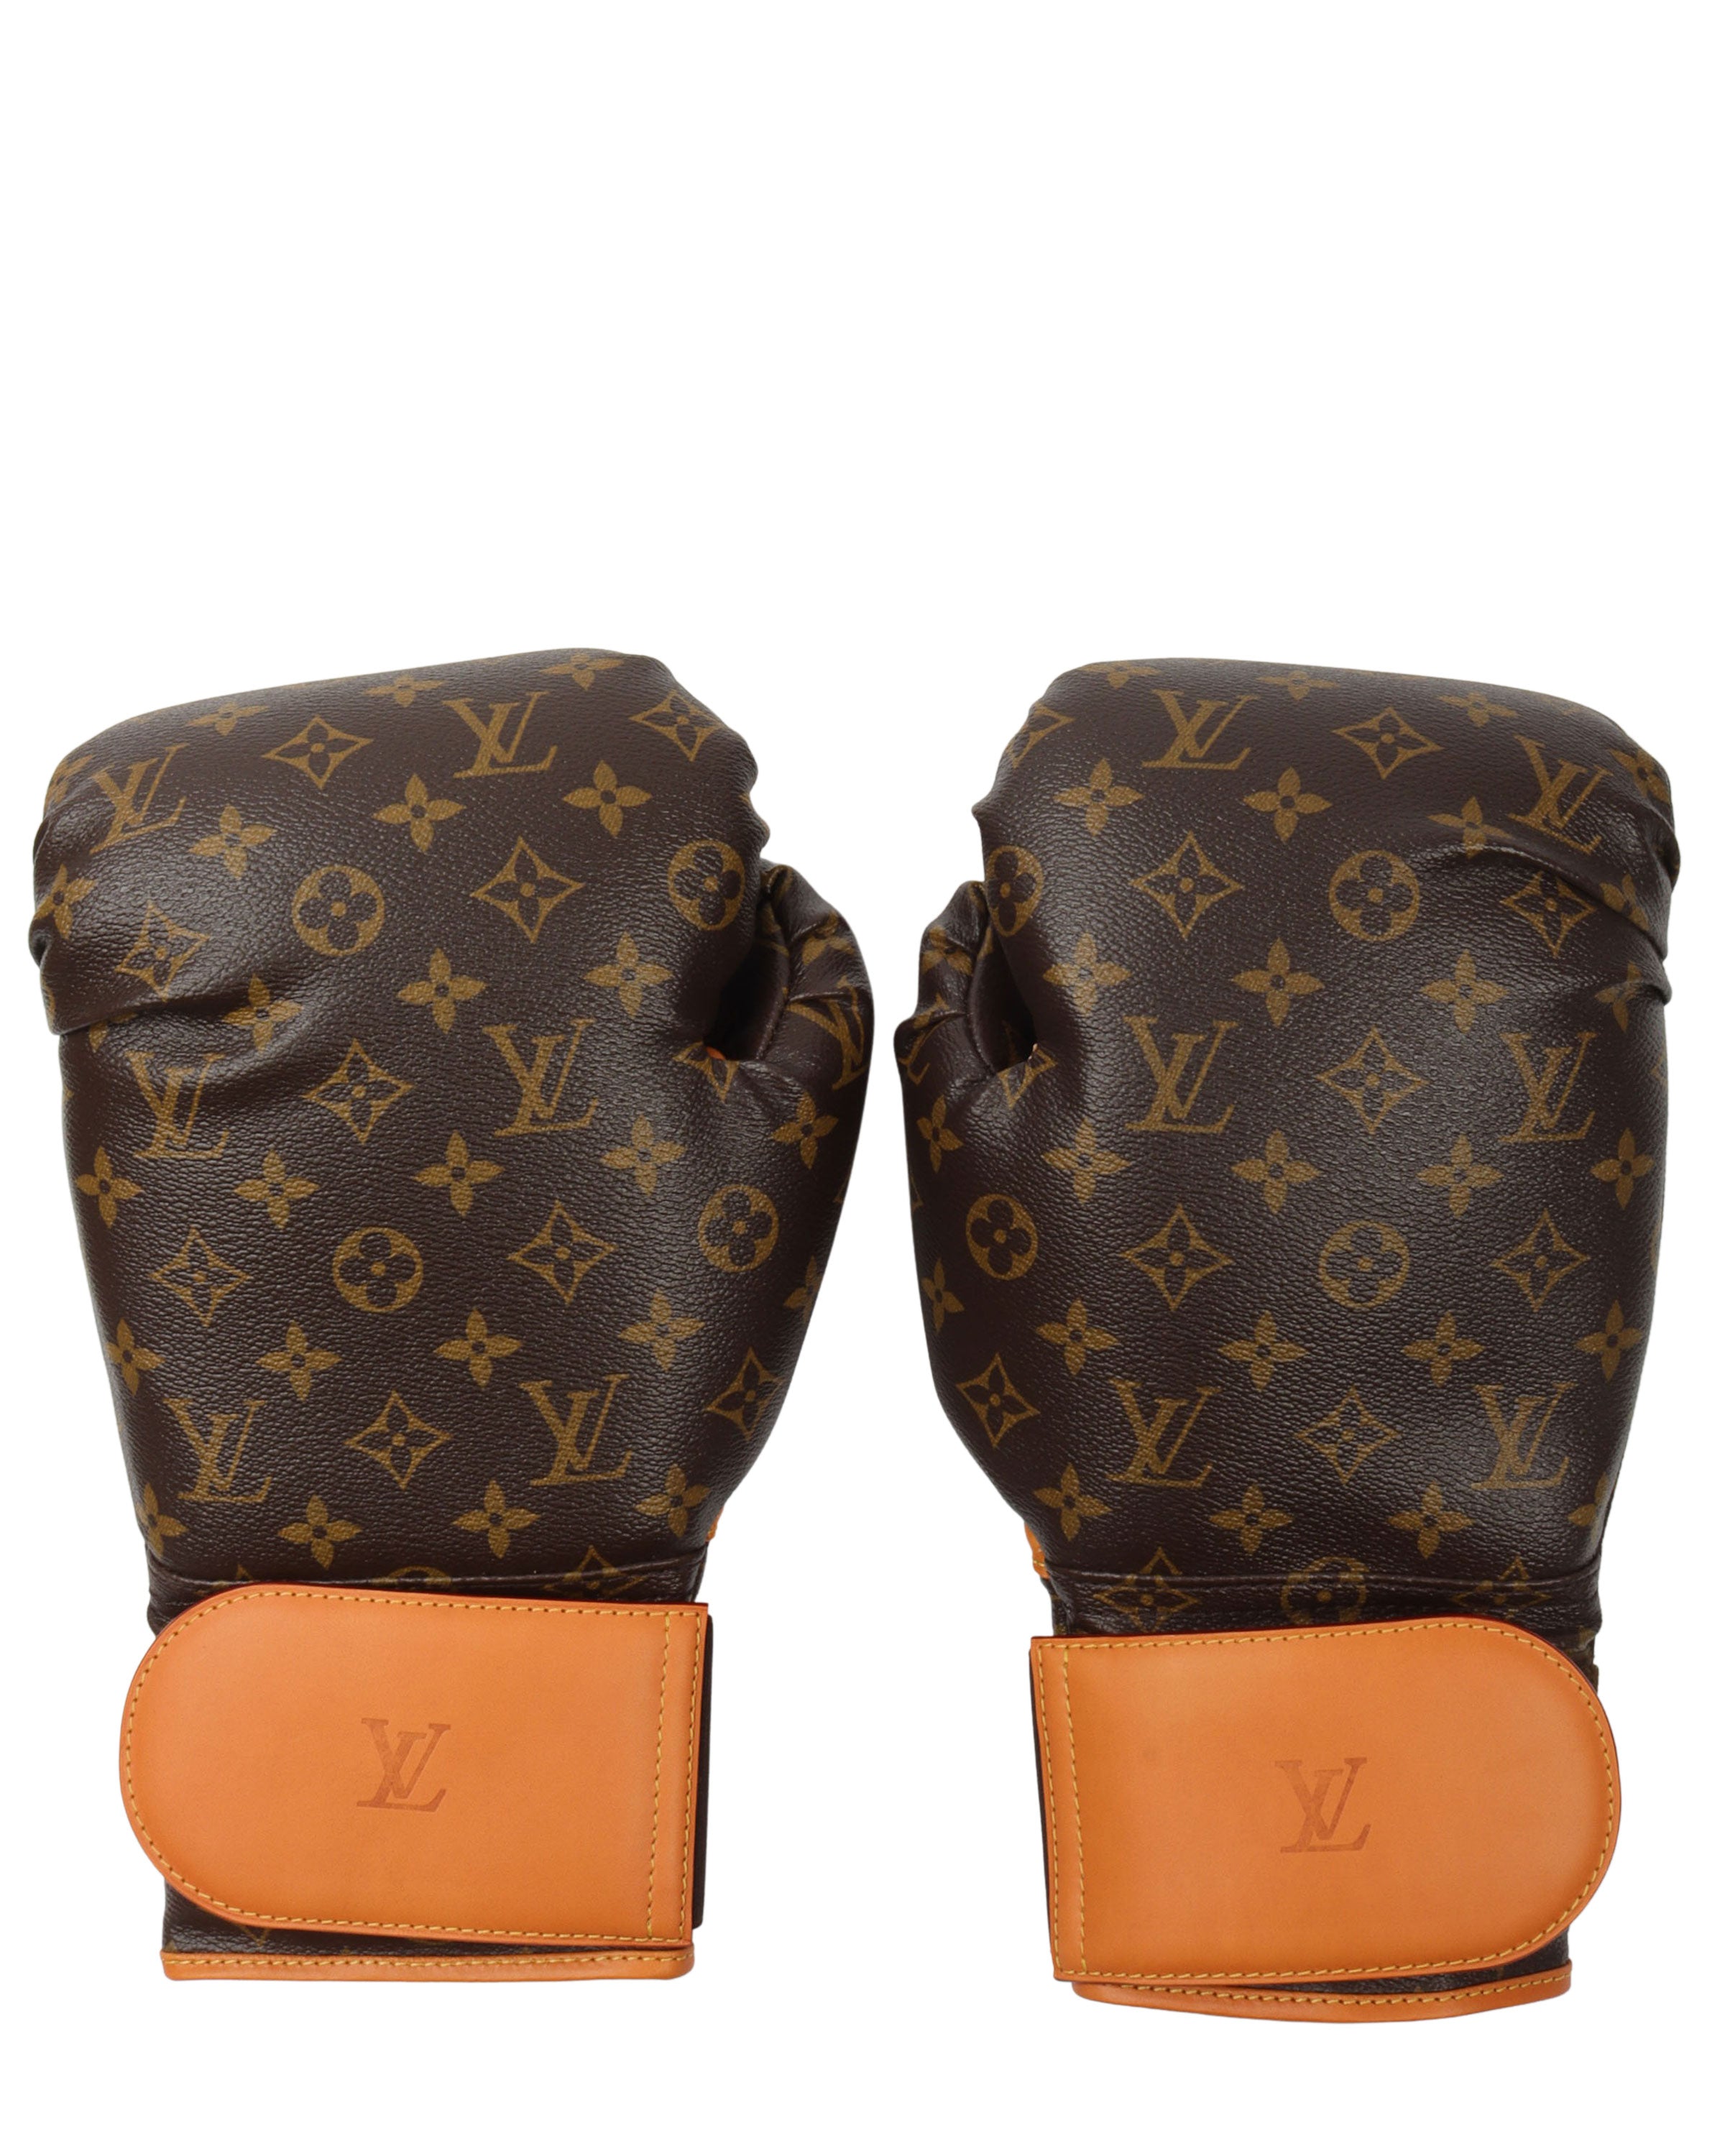 LV Boxing Gloves